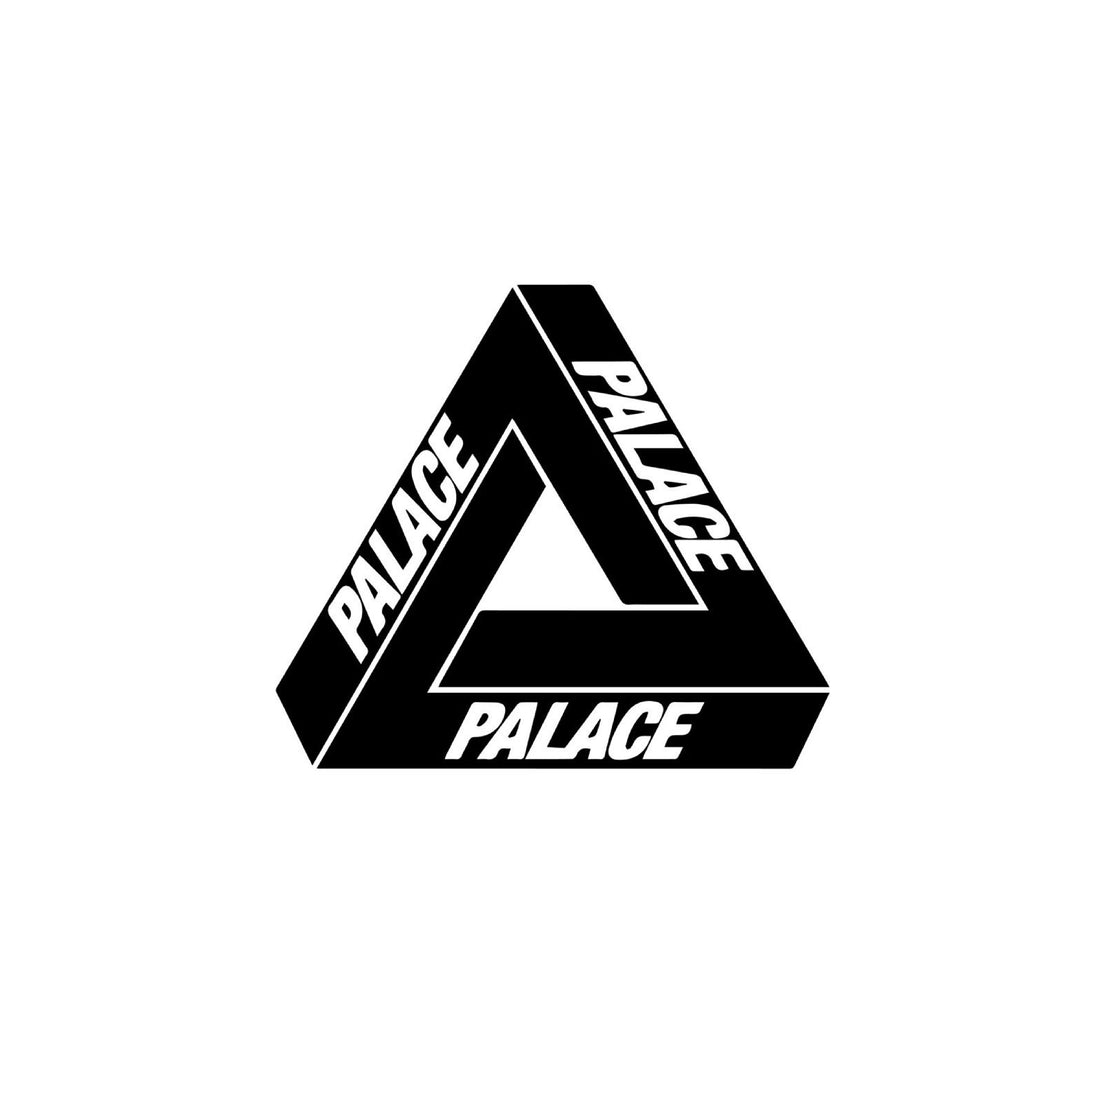  Palace